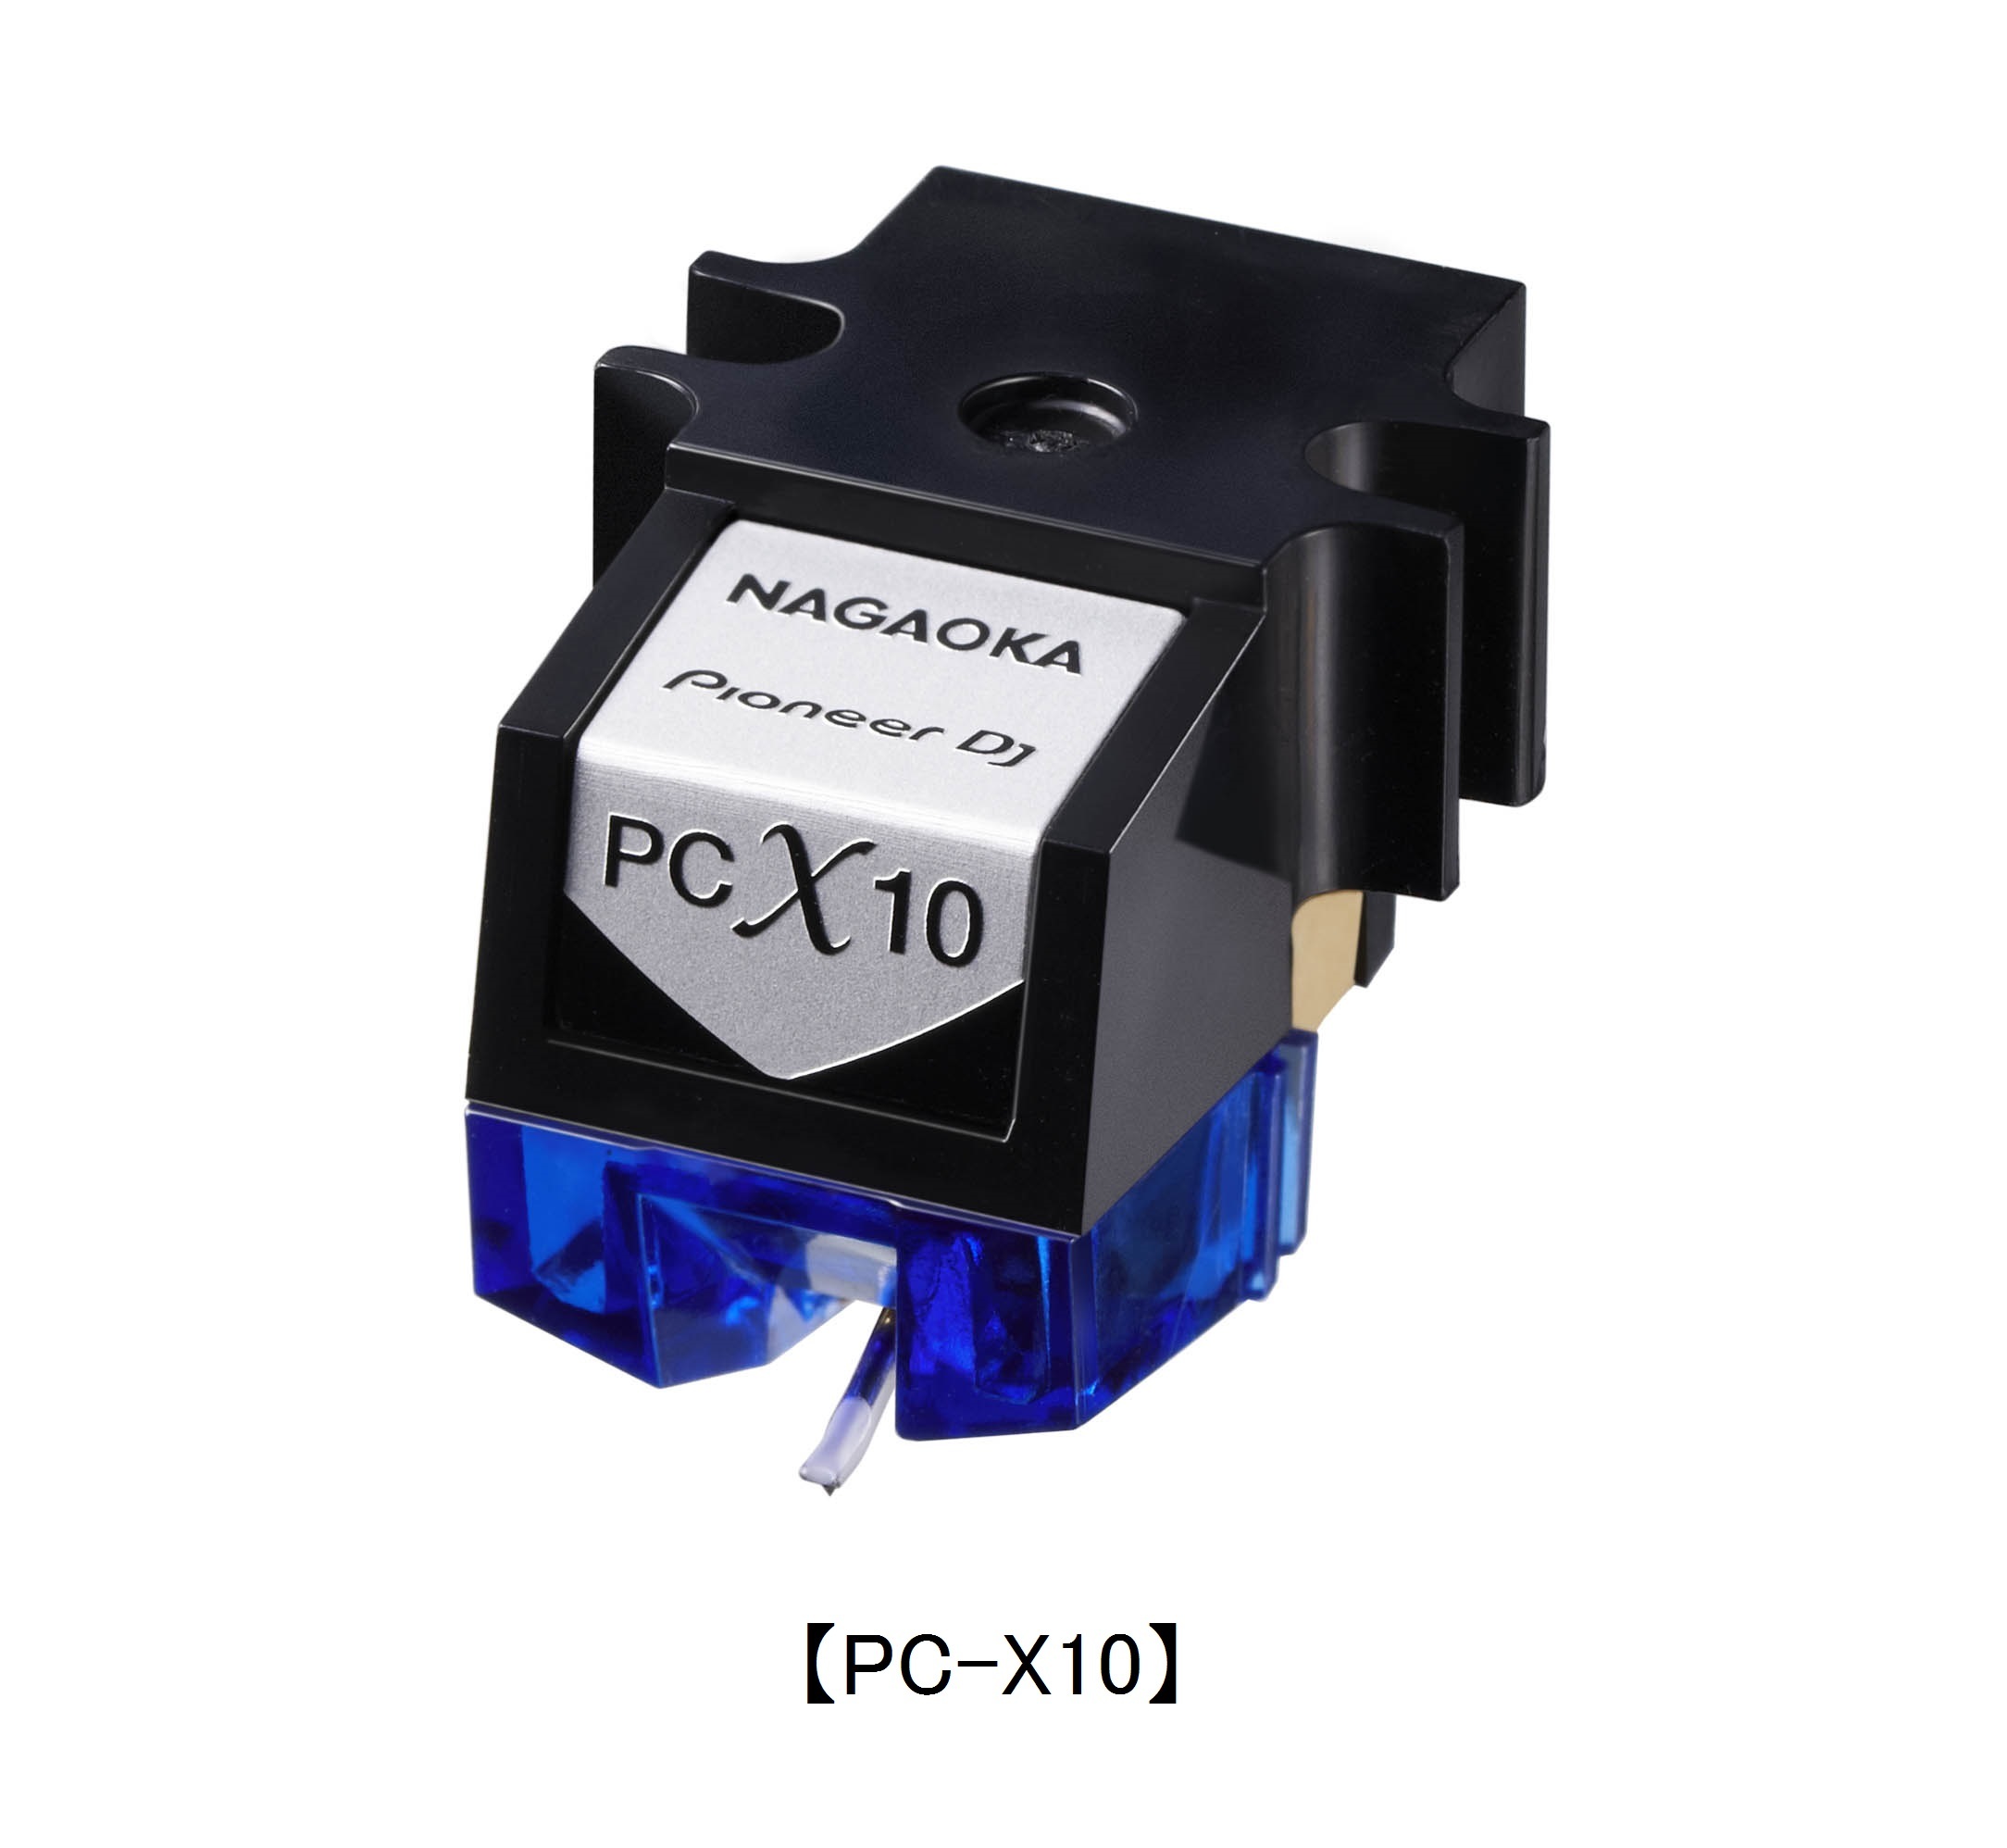 プロフェッショナルDJ用ステレオカートリッジ「PC-X10」を10月上旬発売 